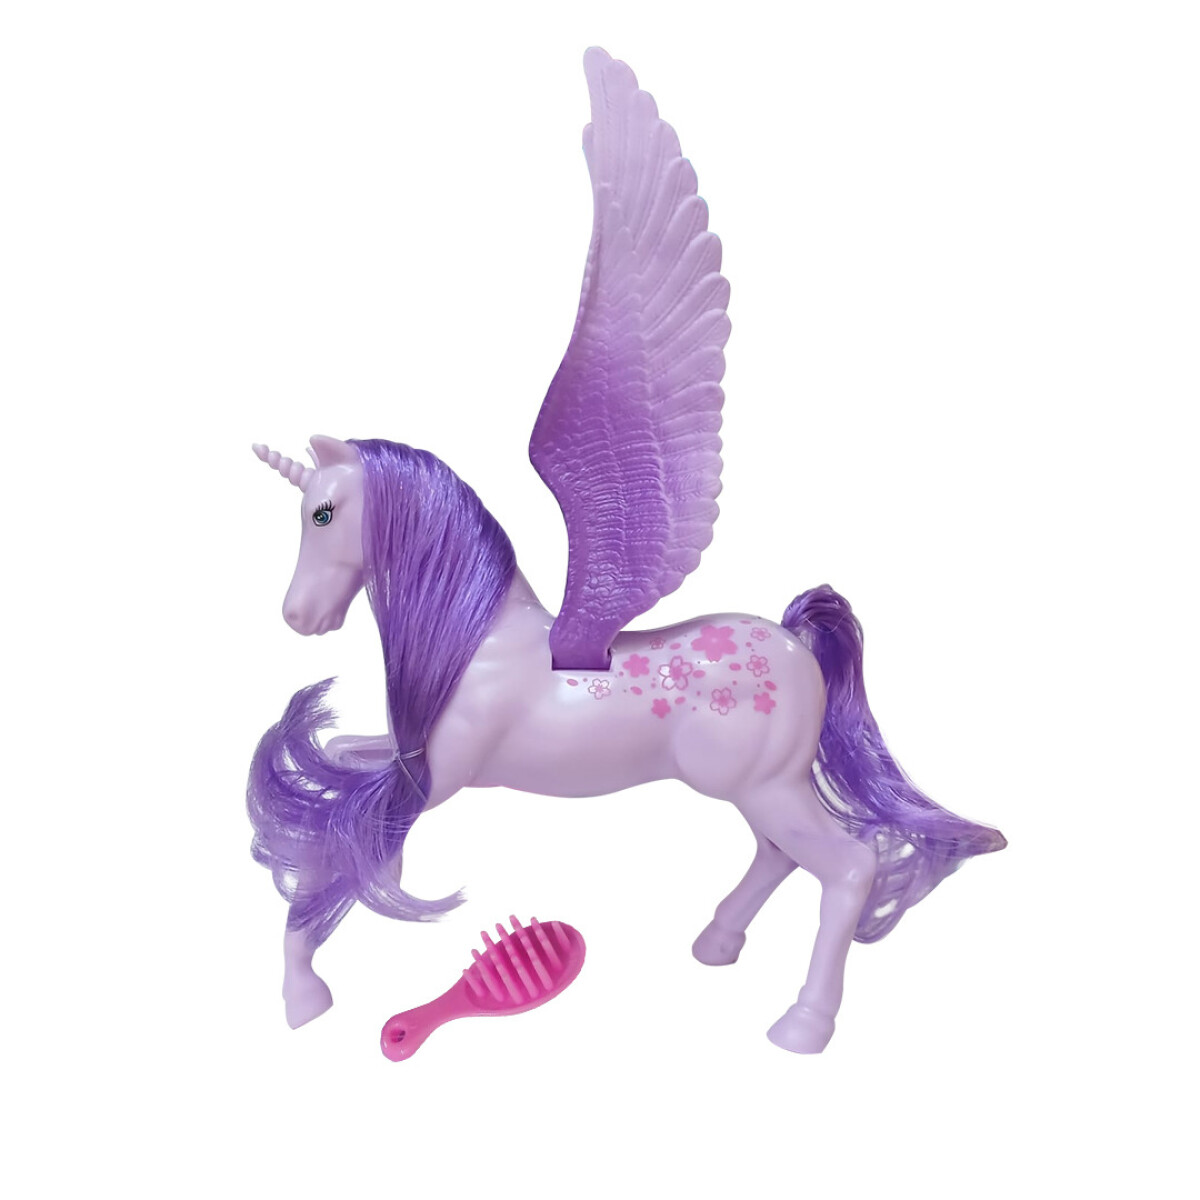 Juguete figura unicornio - violeta 